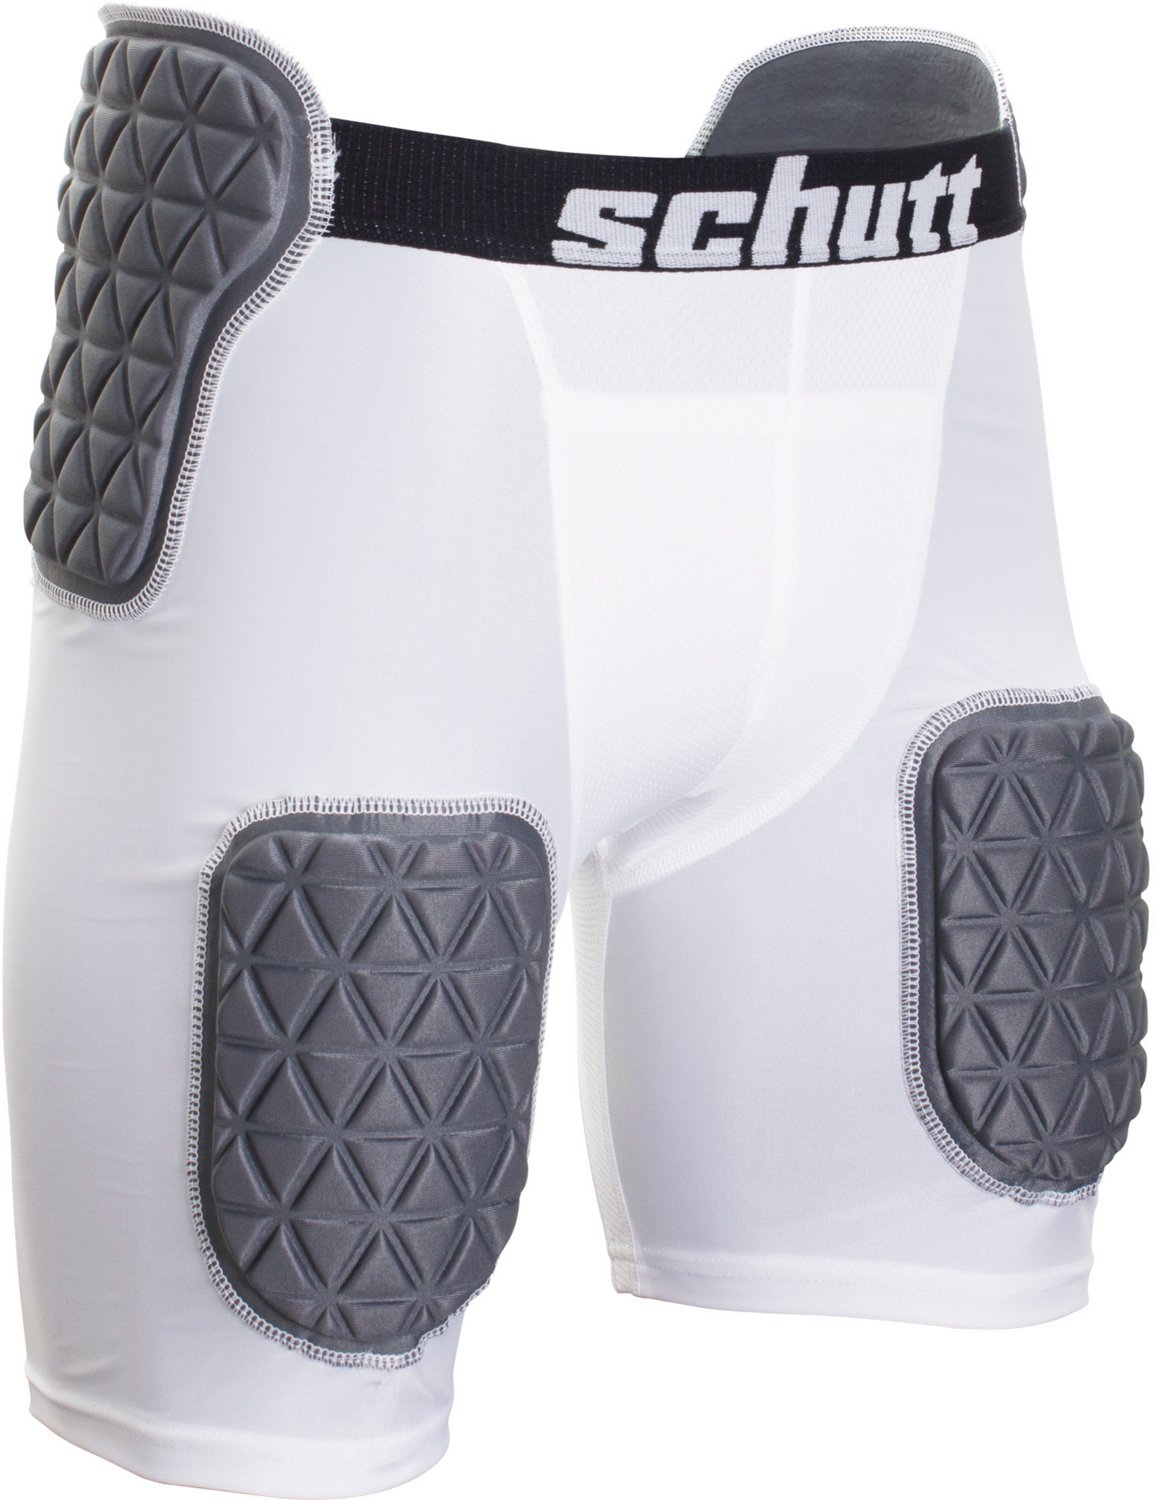 Schutt Football Replacement Tailbone Pads